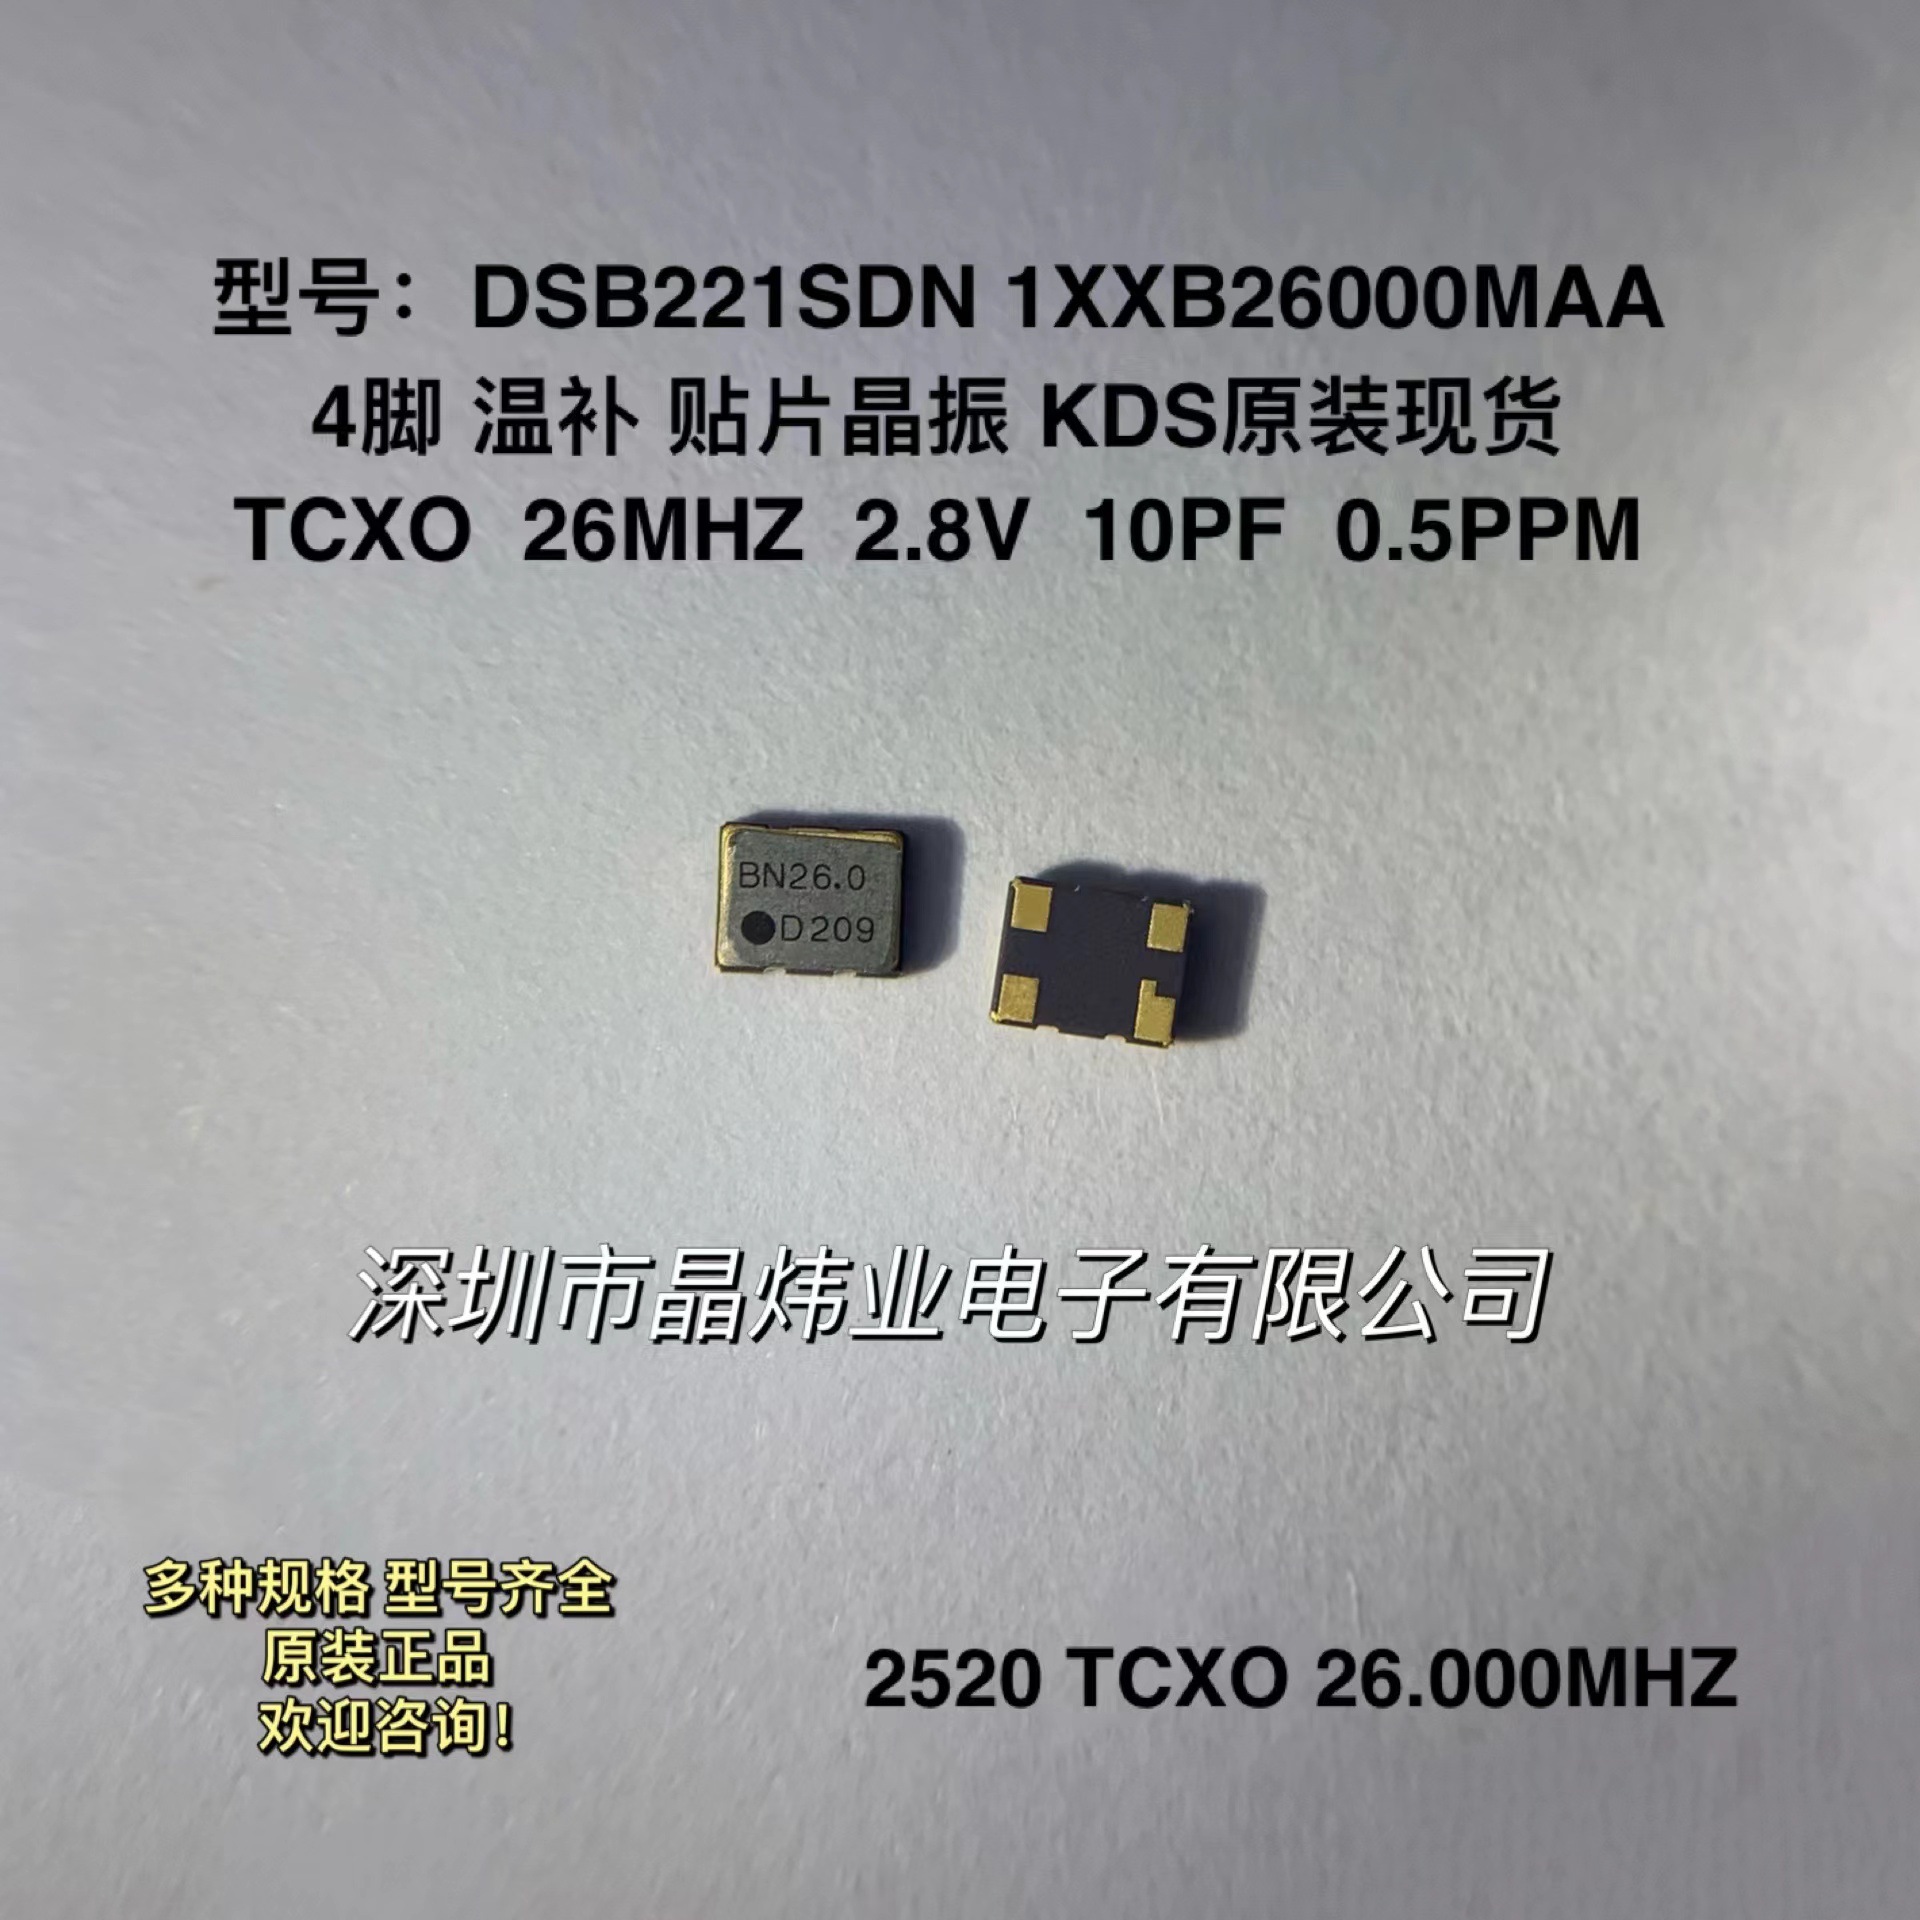 2520 TCXO 26MHZ 26M 2.8V 温补贴片晶振 KDS DSB221SDN 26.000M